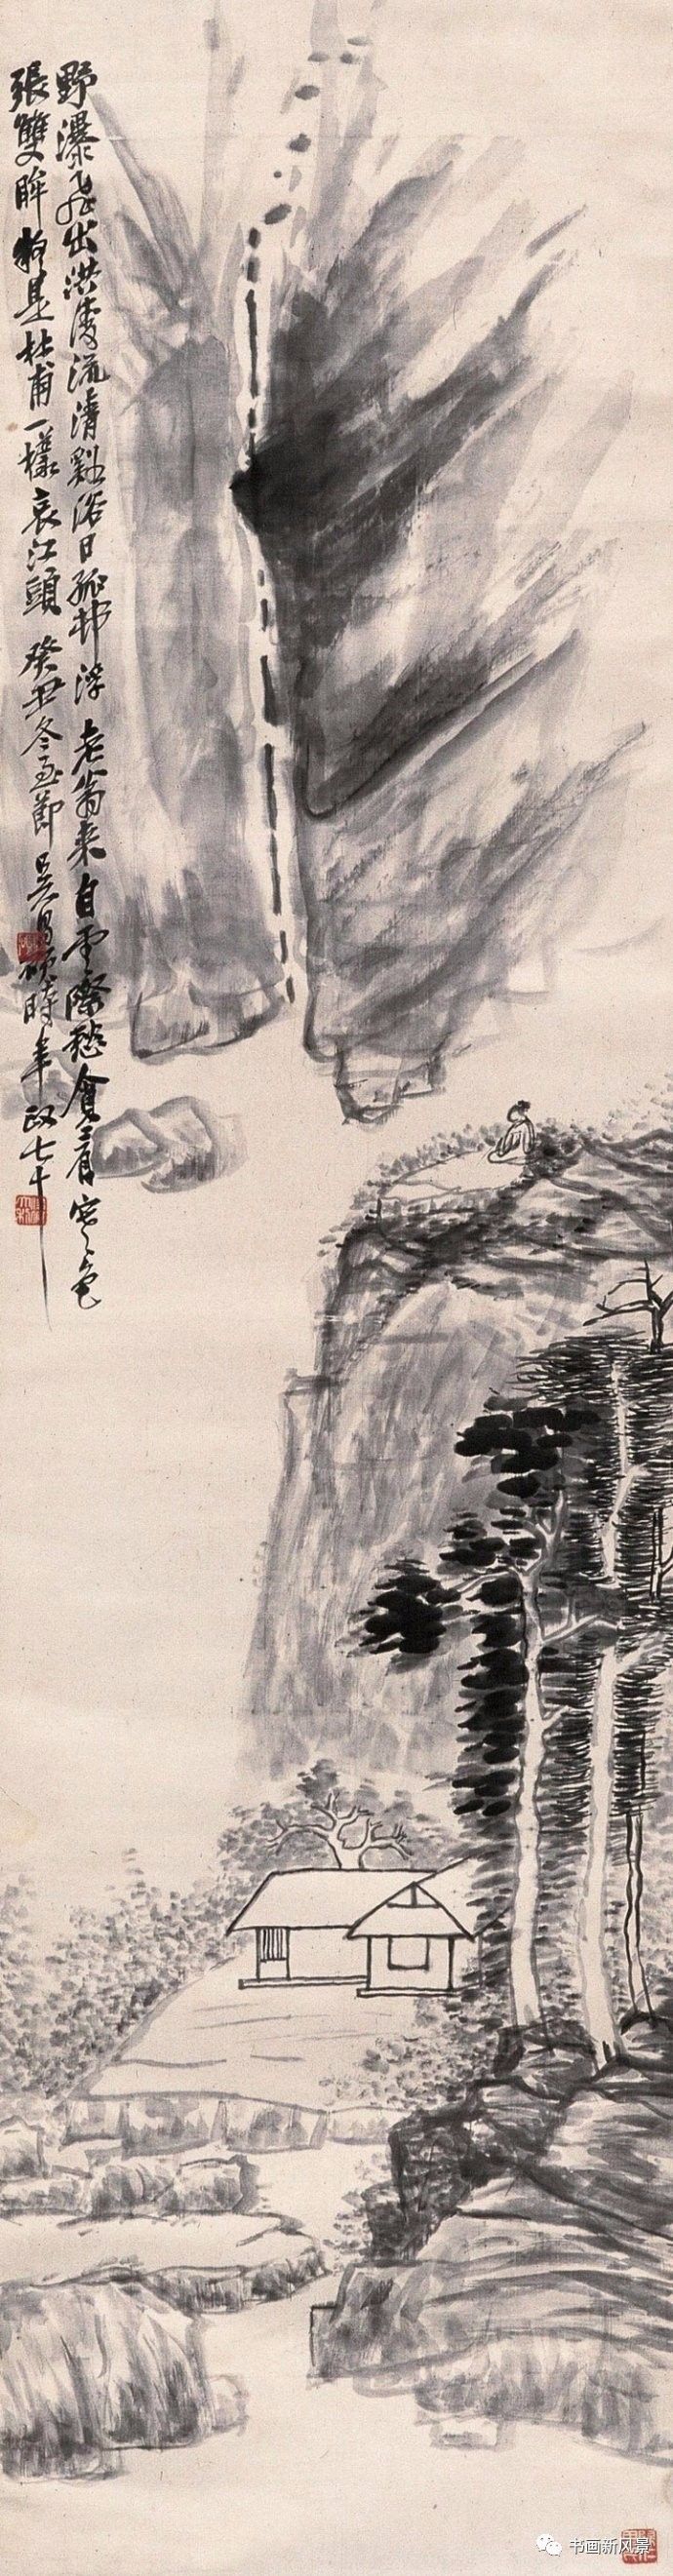 其实吴昌硕的山水画也非常精彩,他燥中带润,润中带燥的笔道,很是让